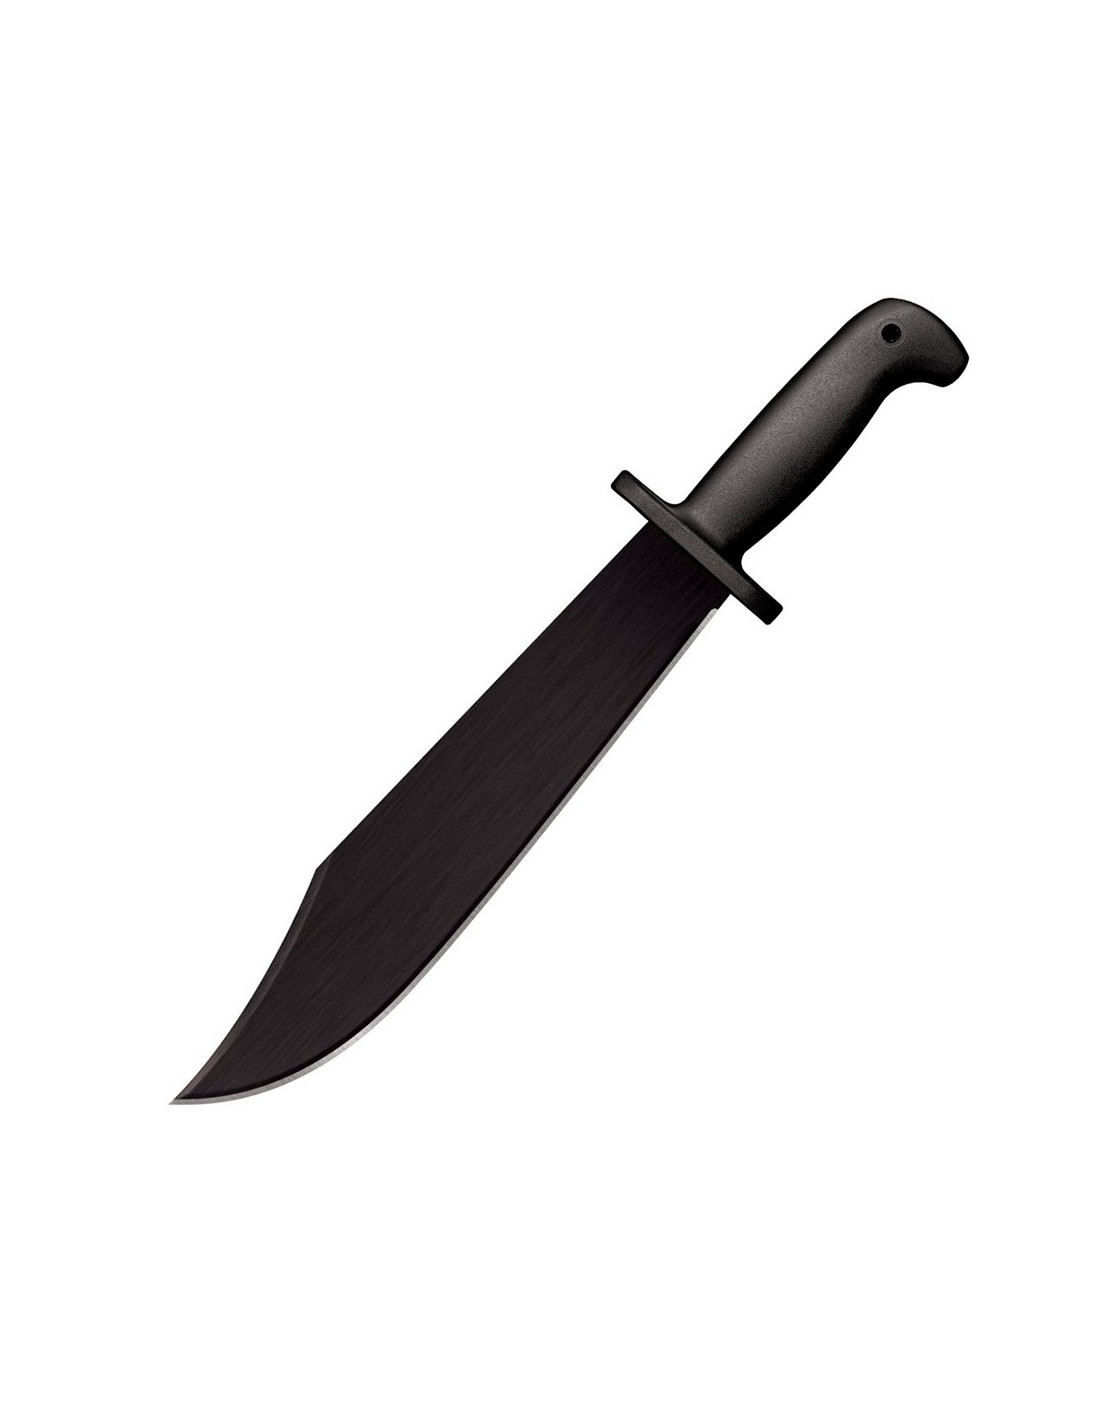 Machete Cortacañas, hoja negra 41,5 cms. ⚔️ Tienda-Medieval